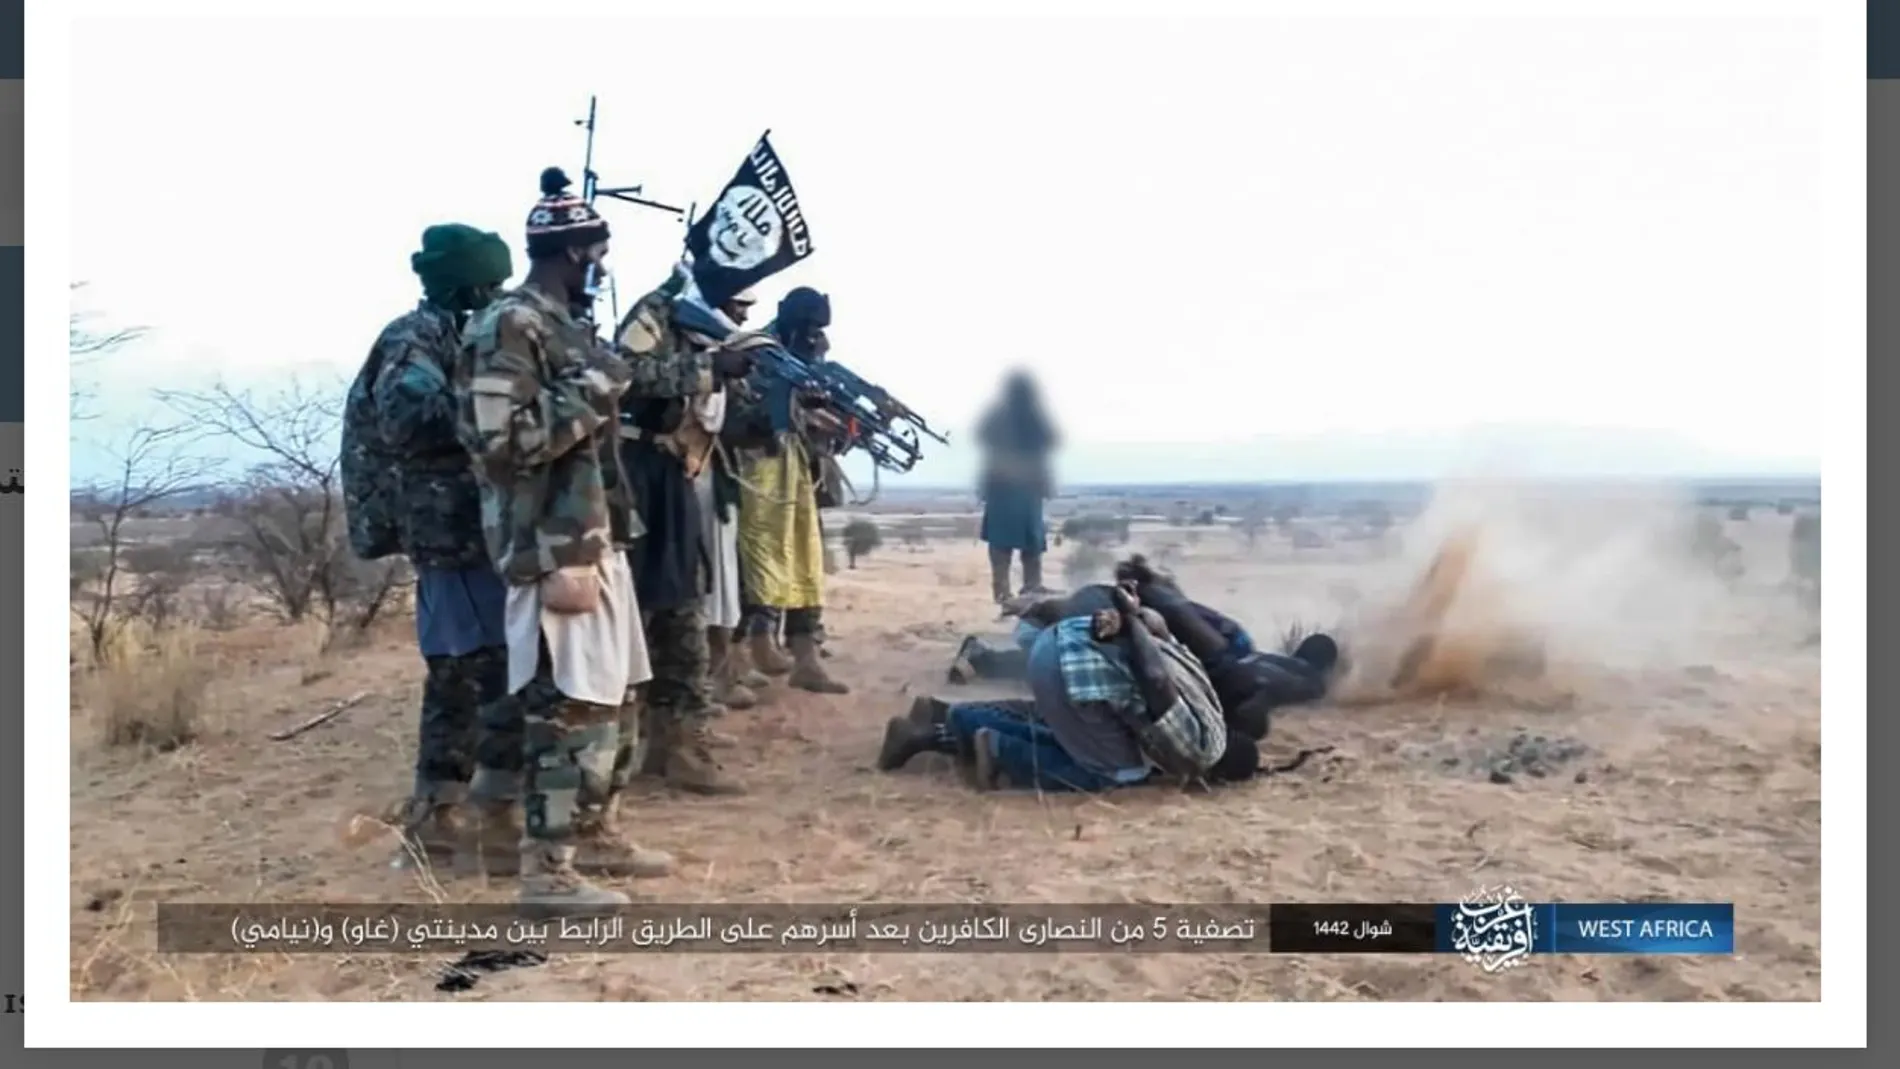 Una de las fotografías difundidas por Daesh en las que se muestra el momemto del asesinato de los cristianos